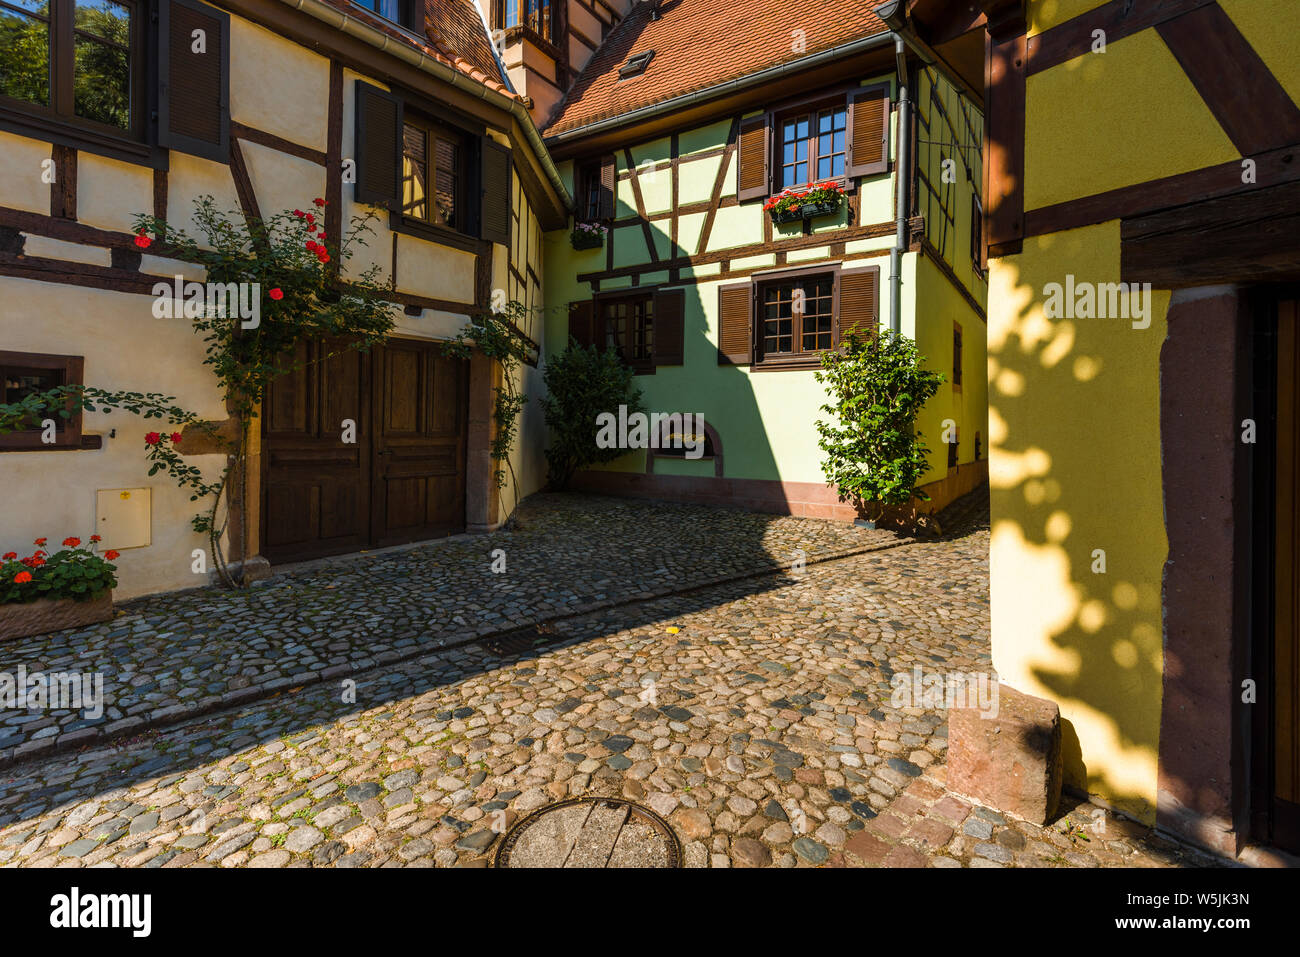 Lane escénica con arquitectura de madera en la antigua ciudad de Kaysersberg, Ruta del Vino de Alsacia, Francia, coloridas casas medievales, destino turístico Foto de stock